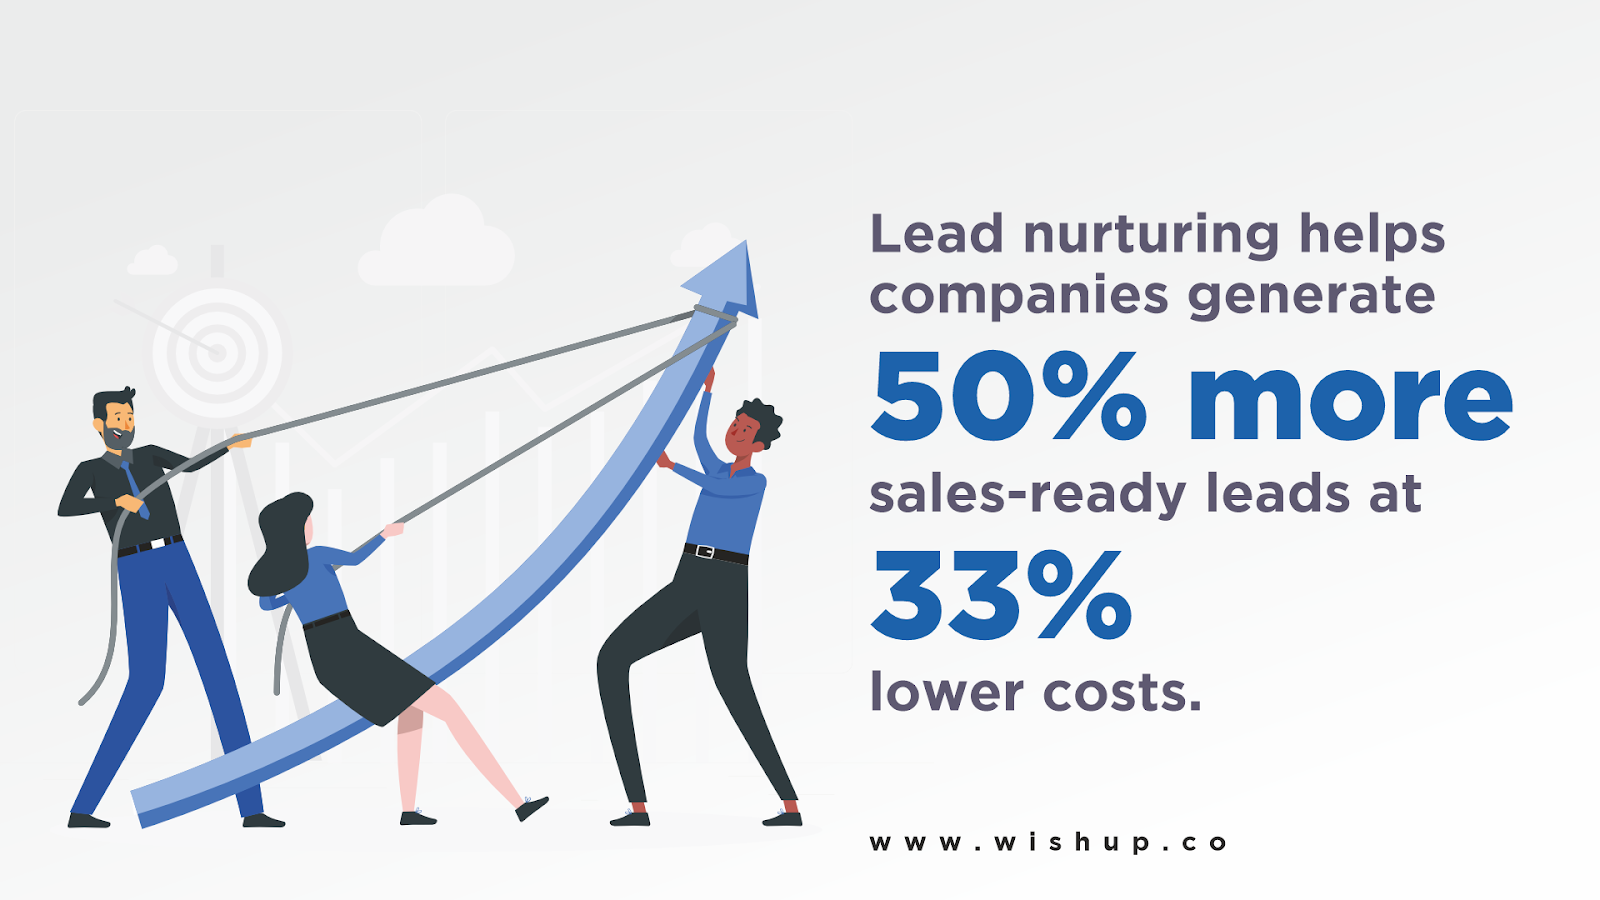 Lead nurturing helps get 50% more leads